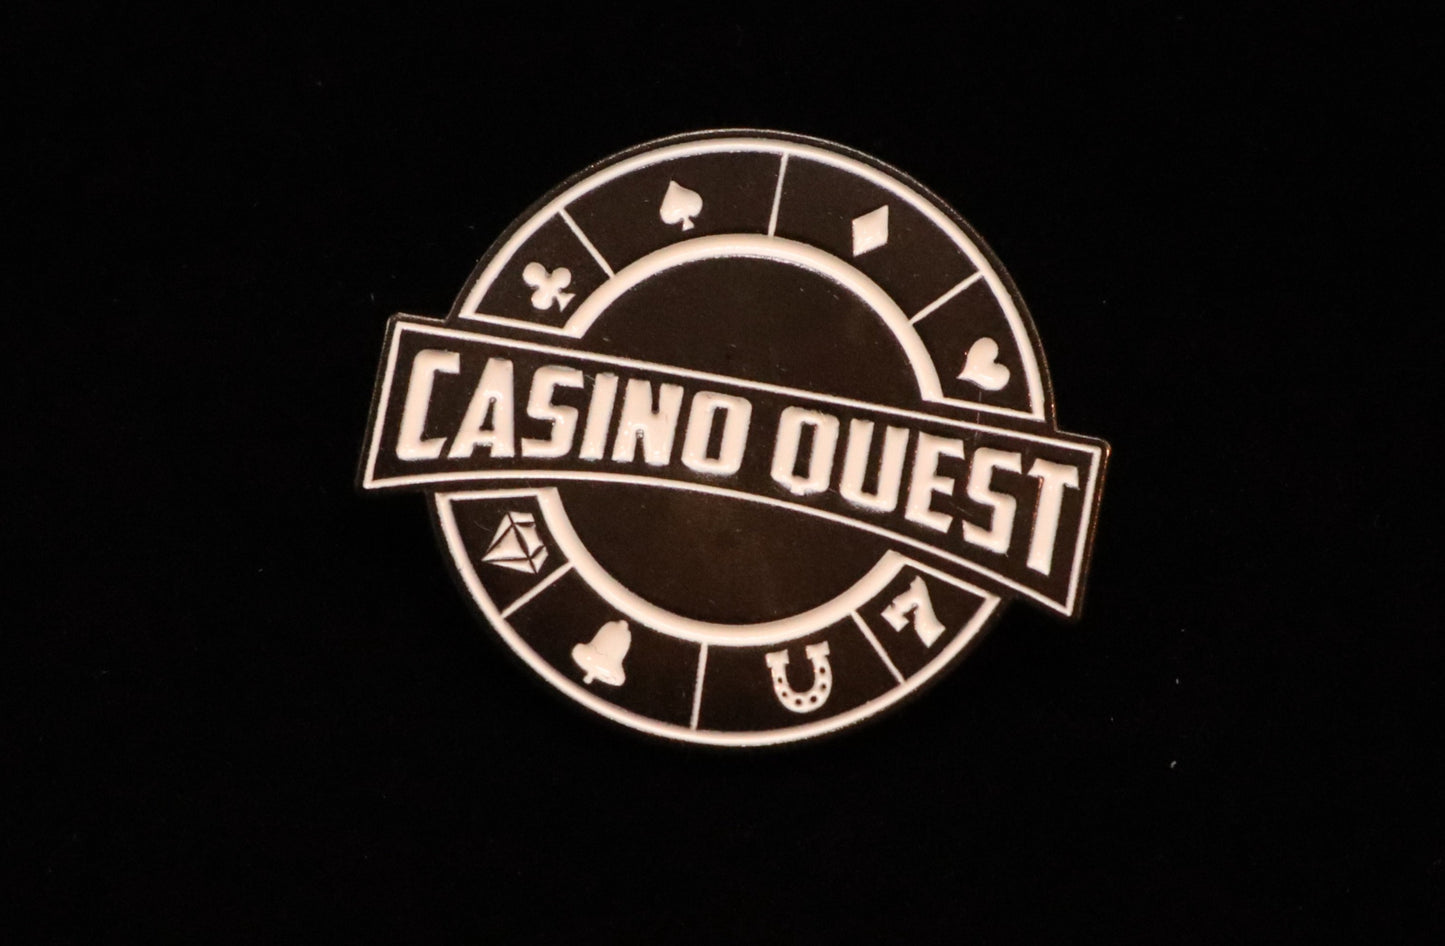 Black and White Minimalist Casino Quest Logo Pin